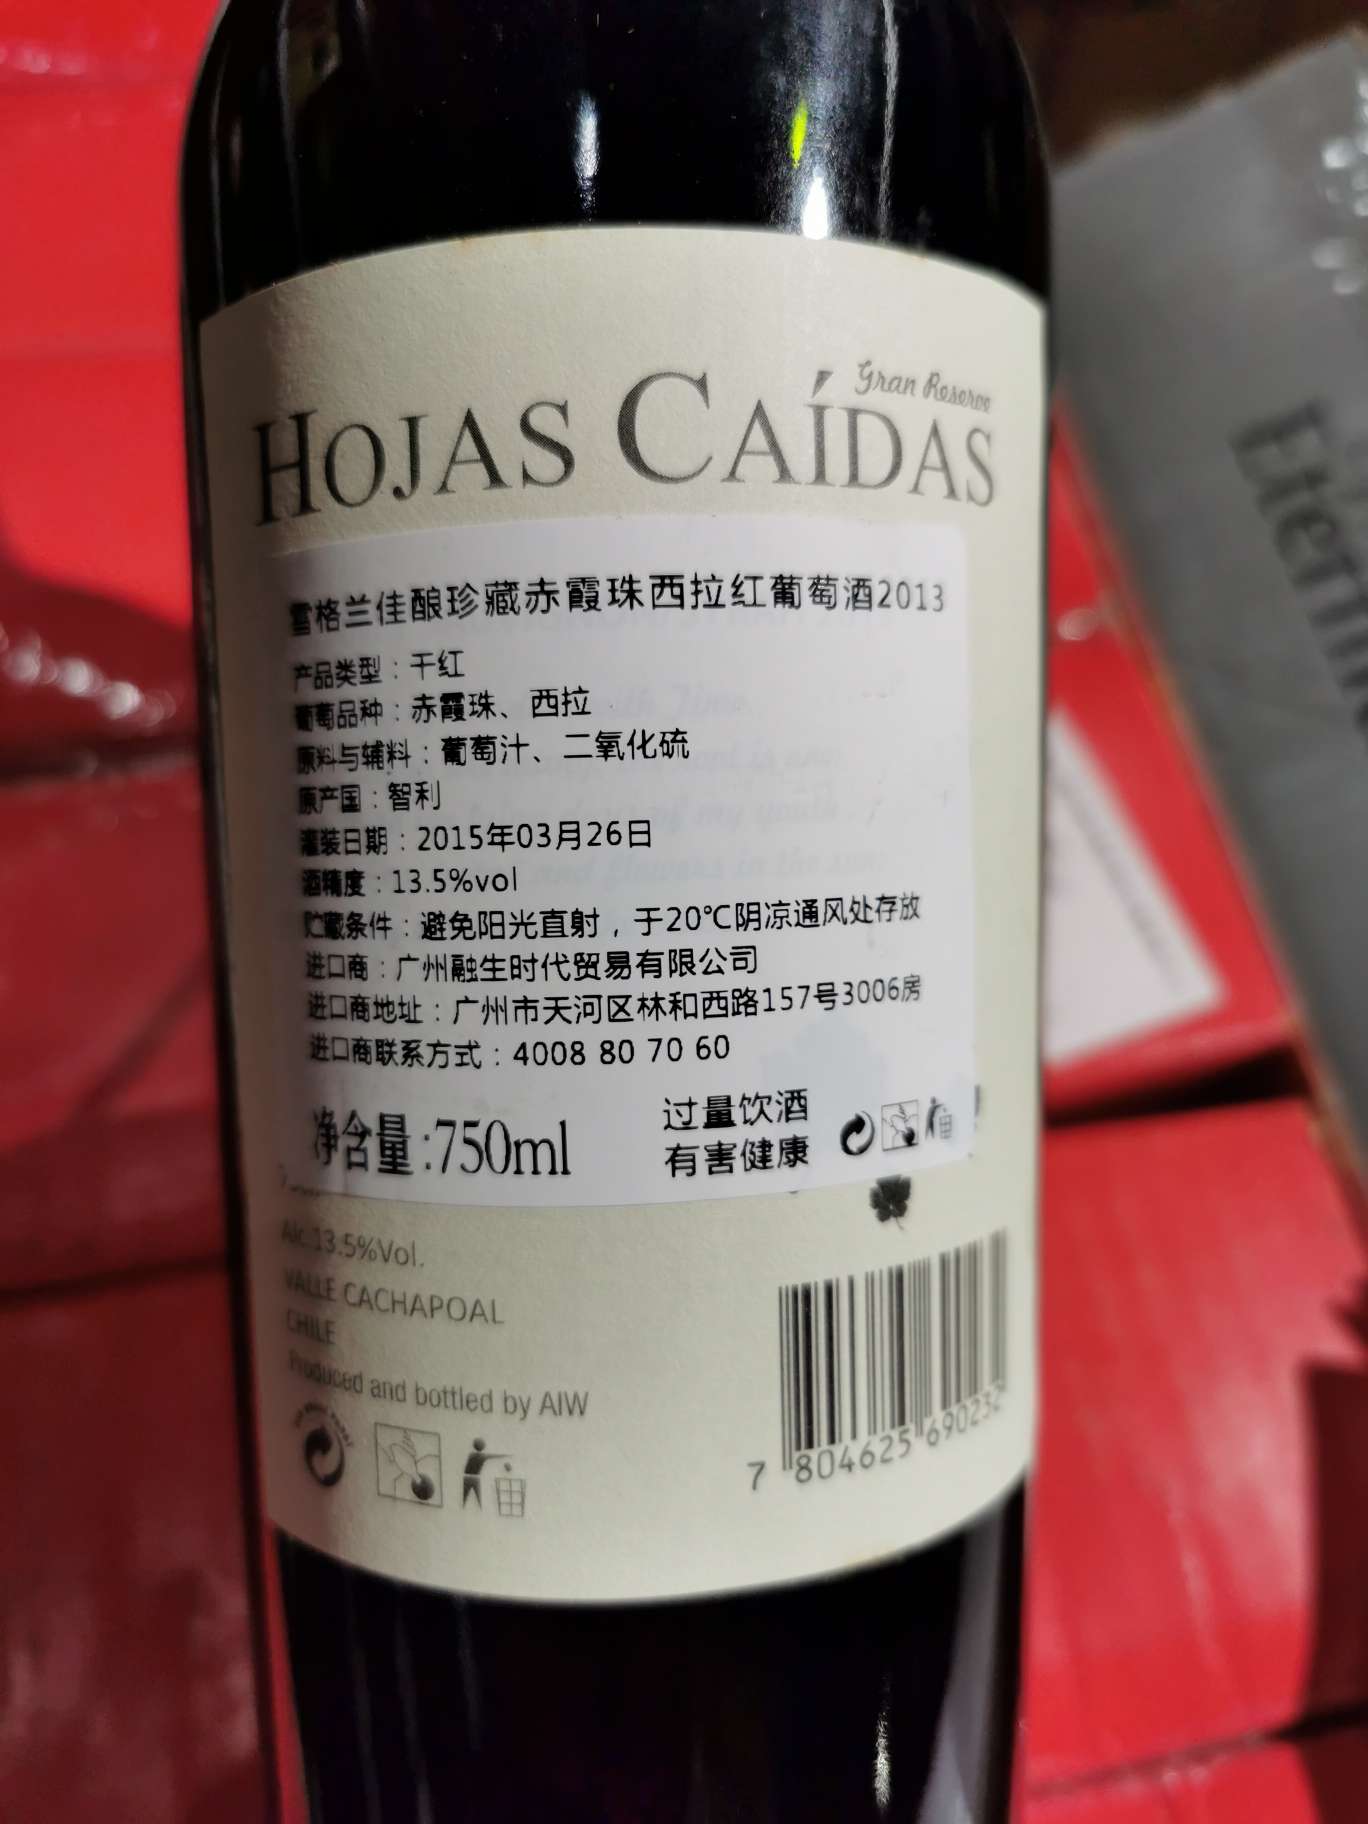 雪格兰佳酿珍藏赤霞珠西拉红葡萄酒产品图